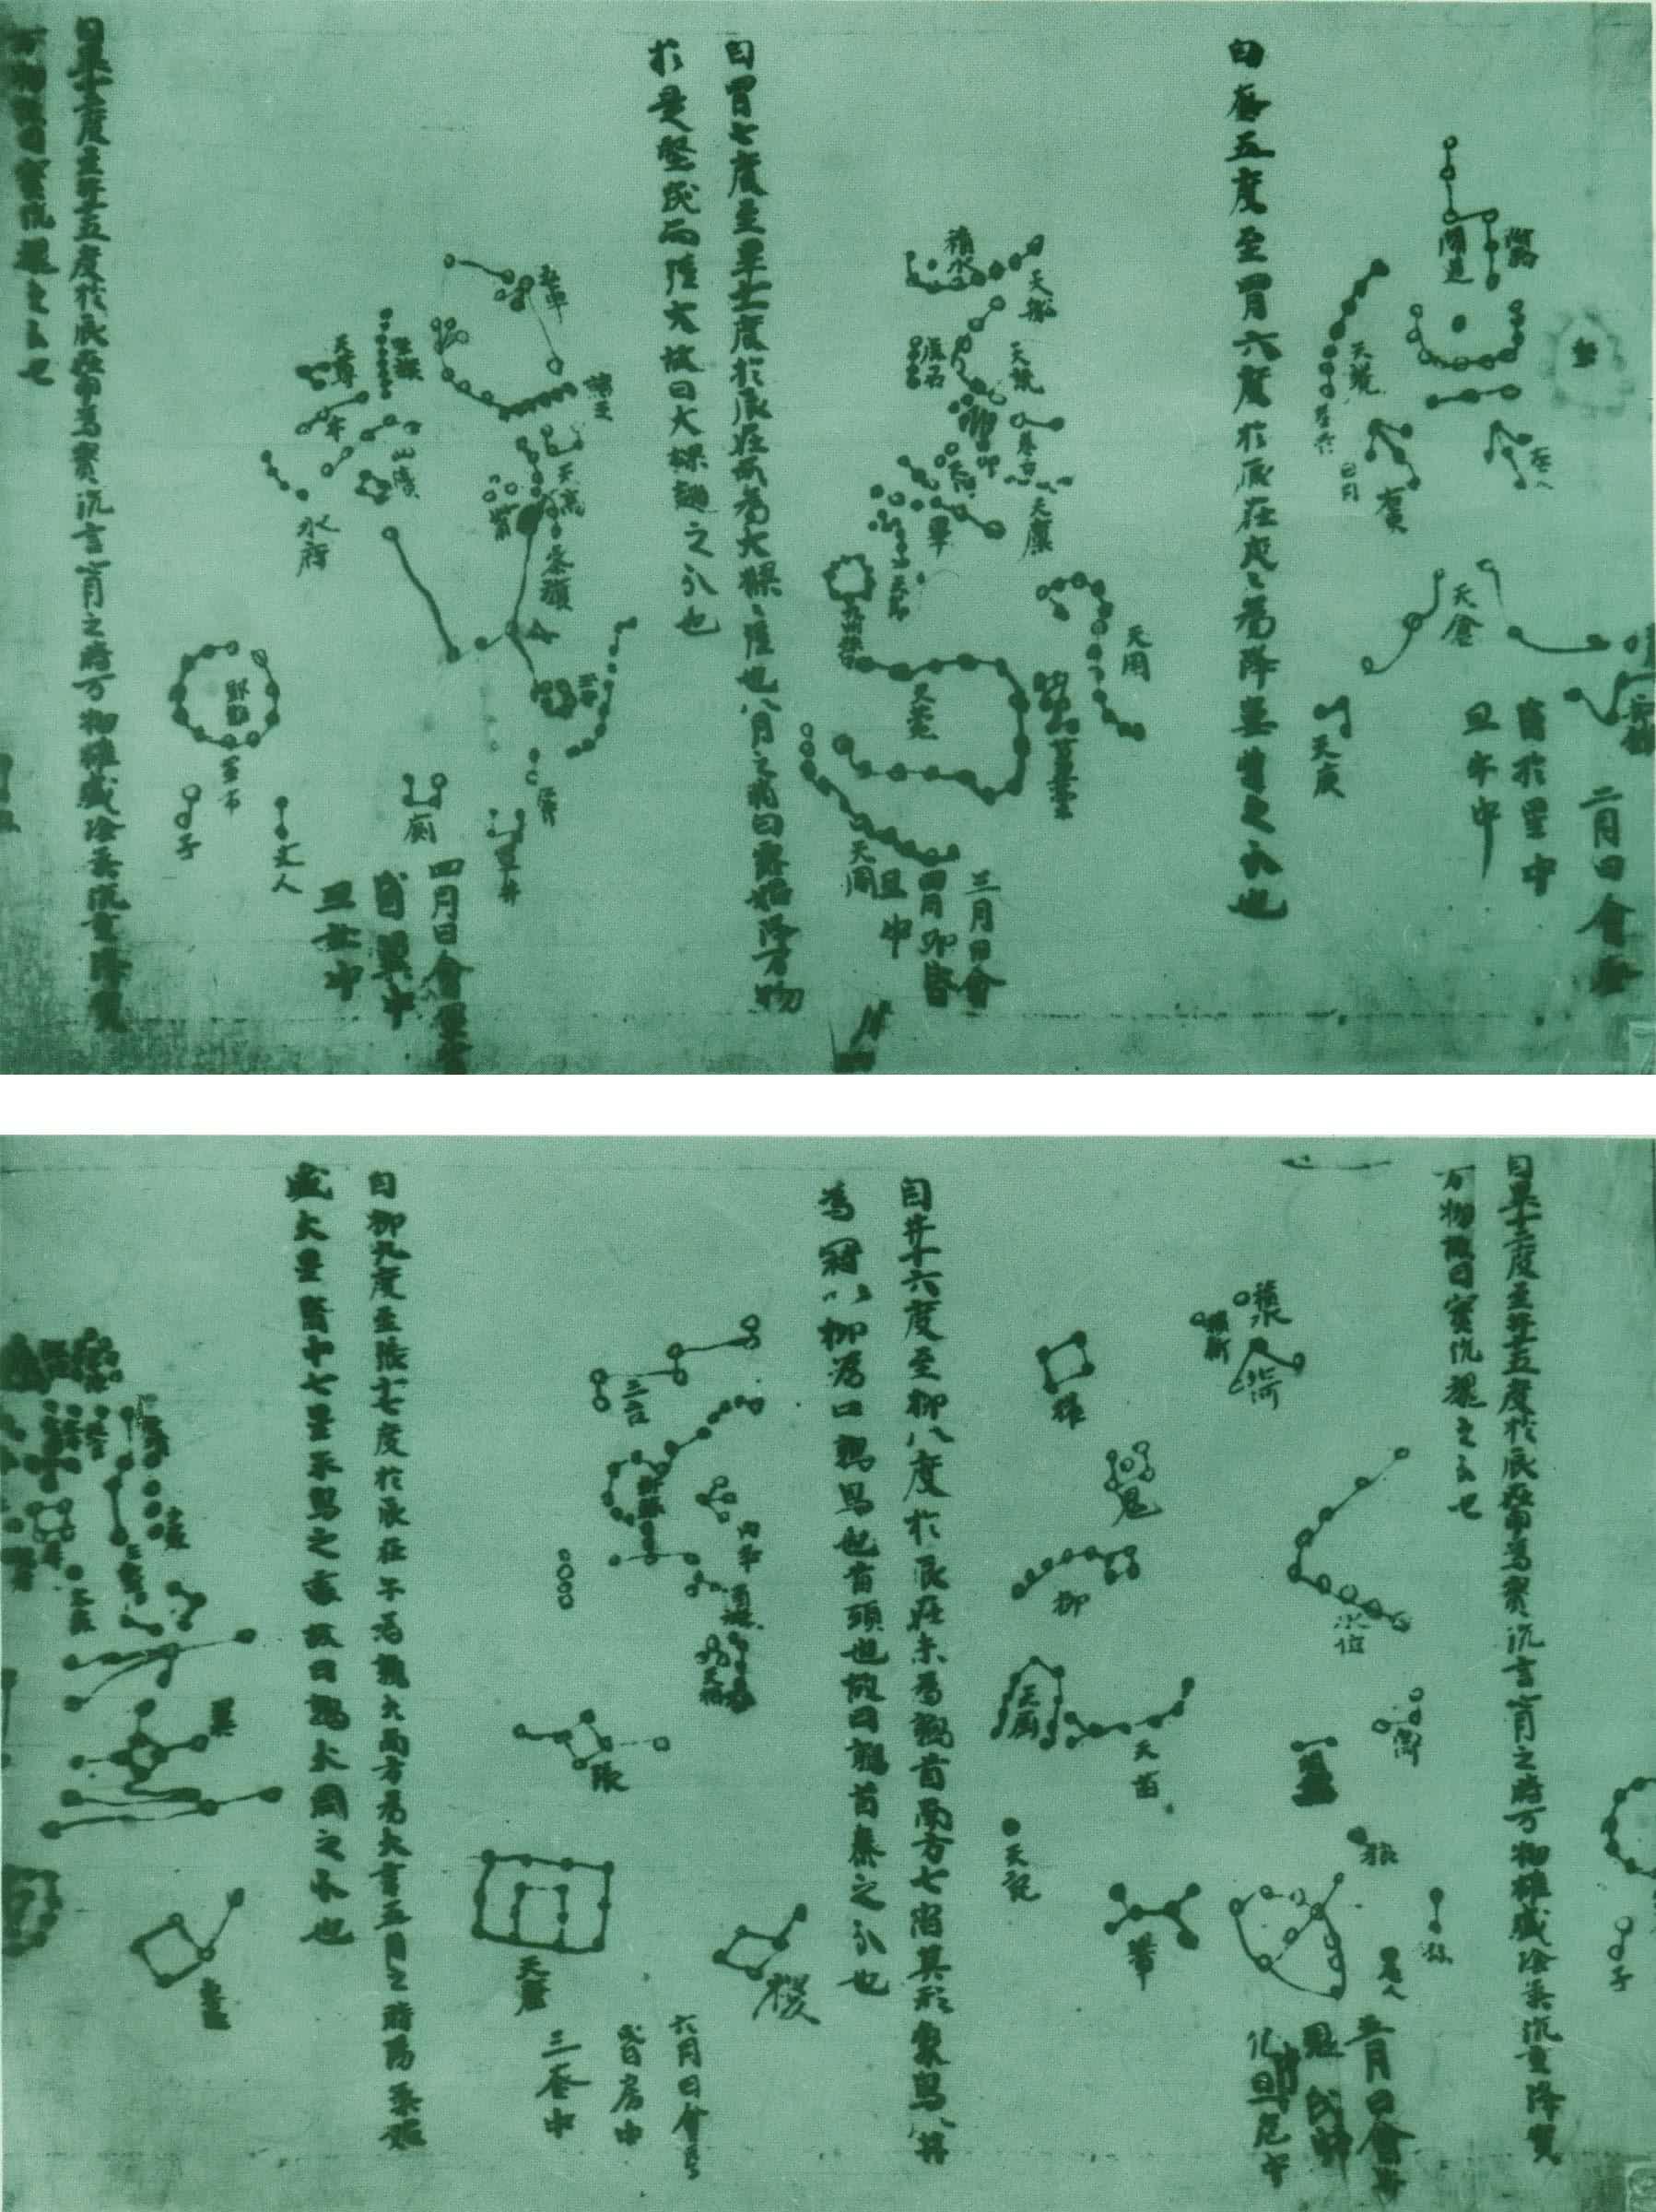 敦煌星图  世界现存著名唐代古星图，约绘制于公元705～710年。